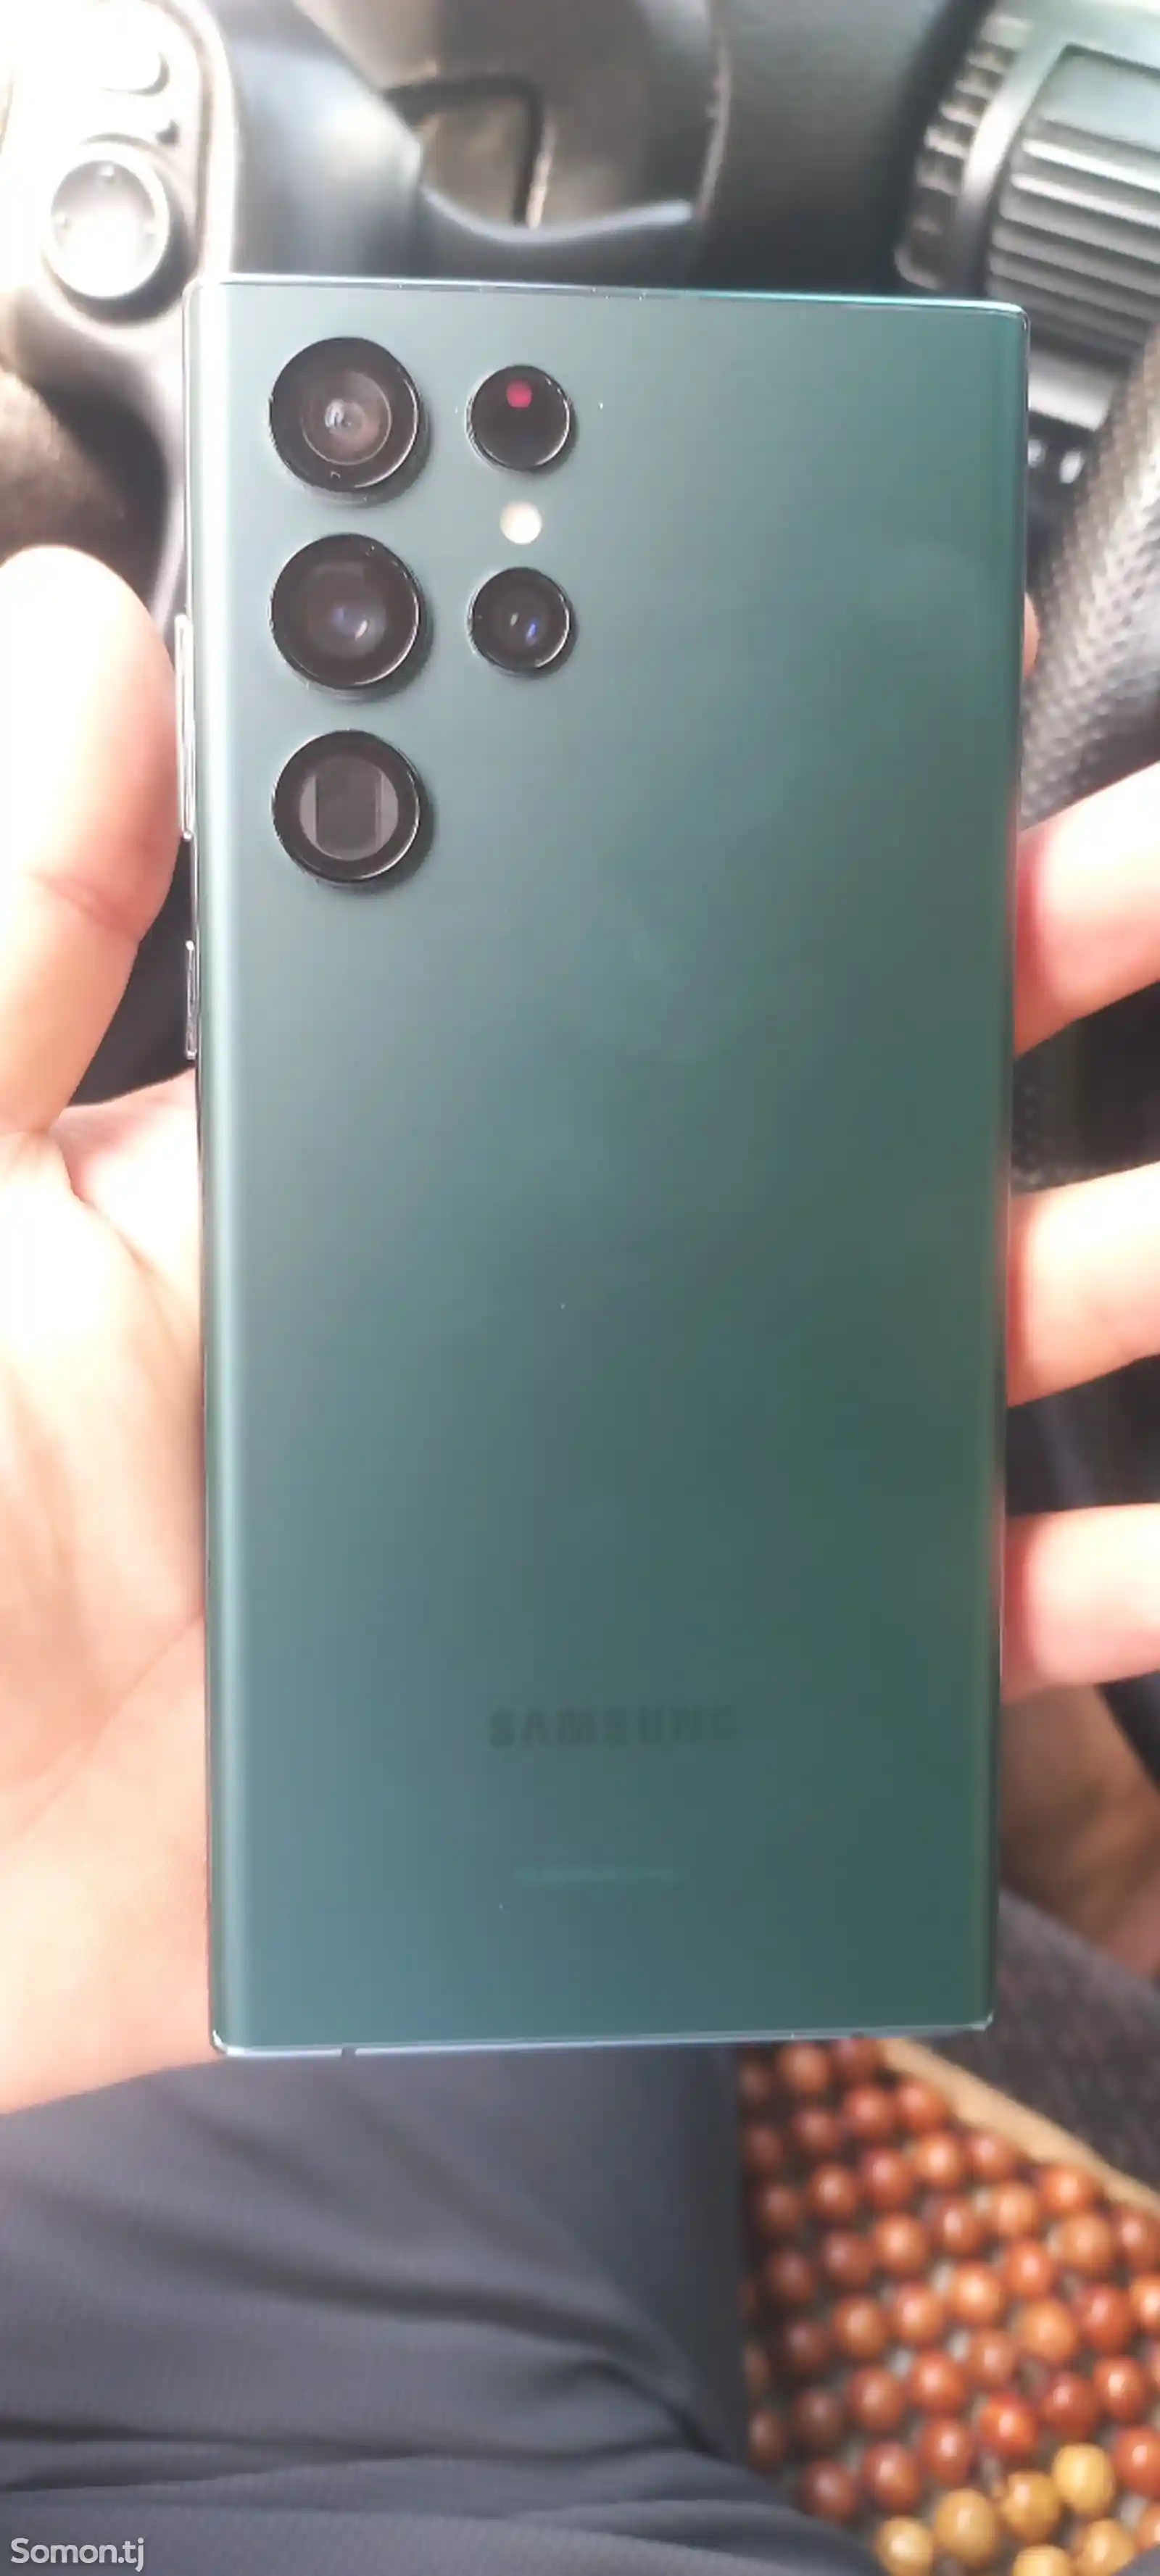 Samsung Galaxy S22-1